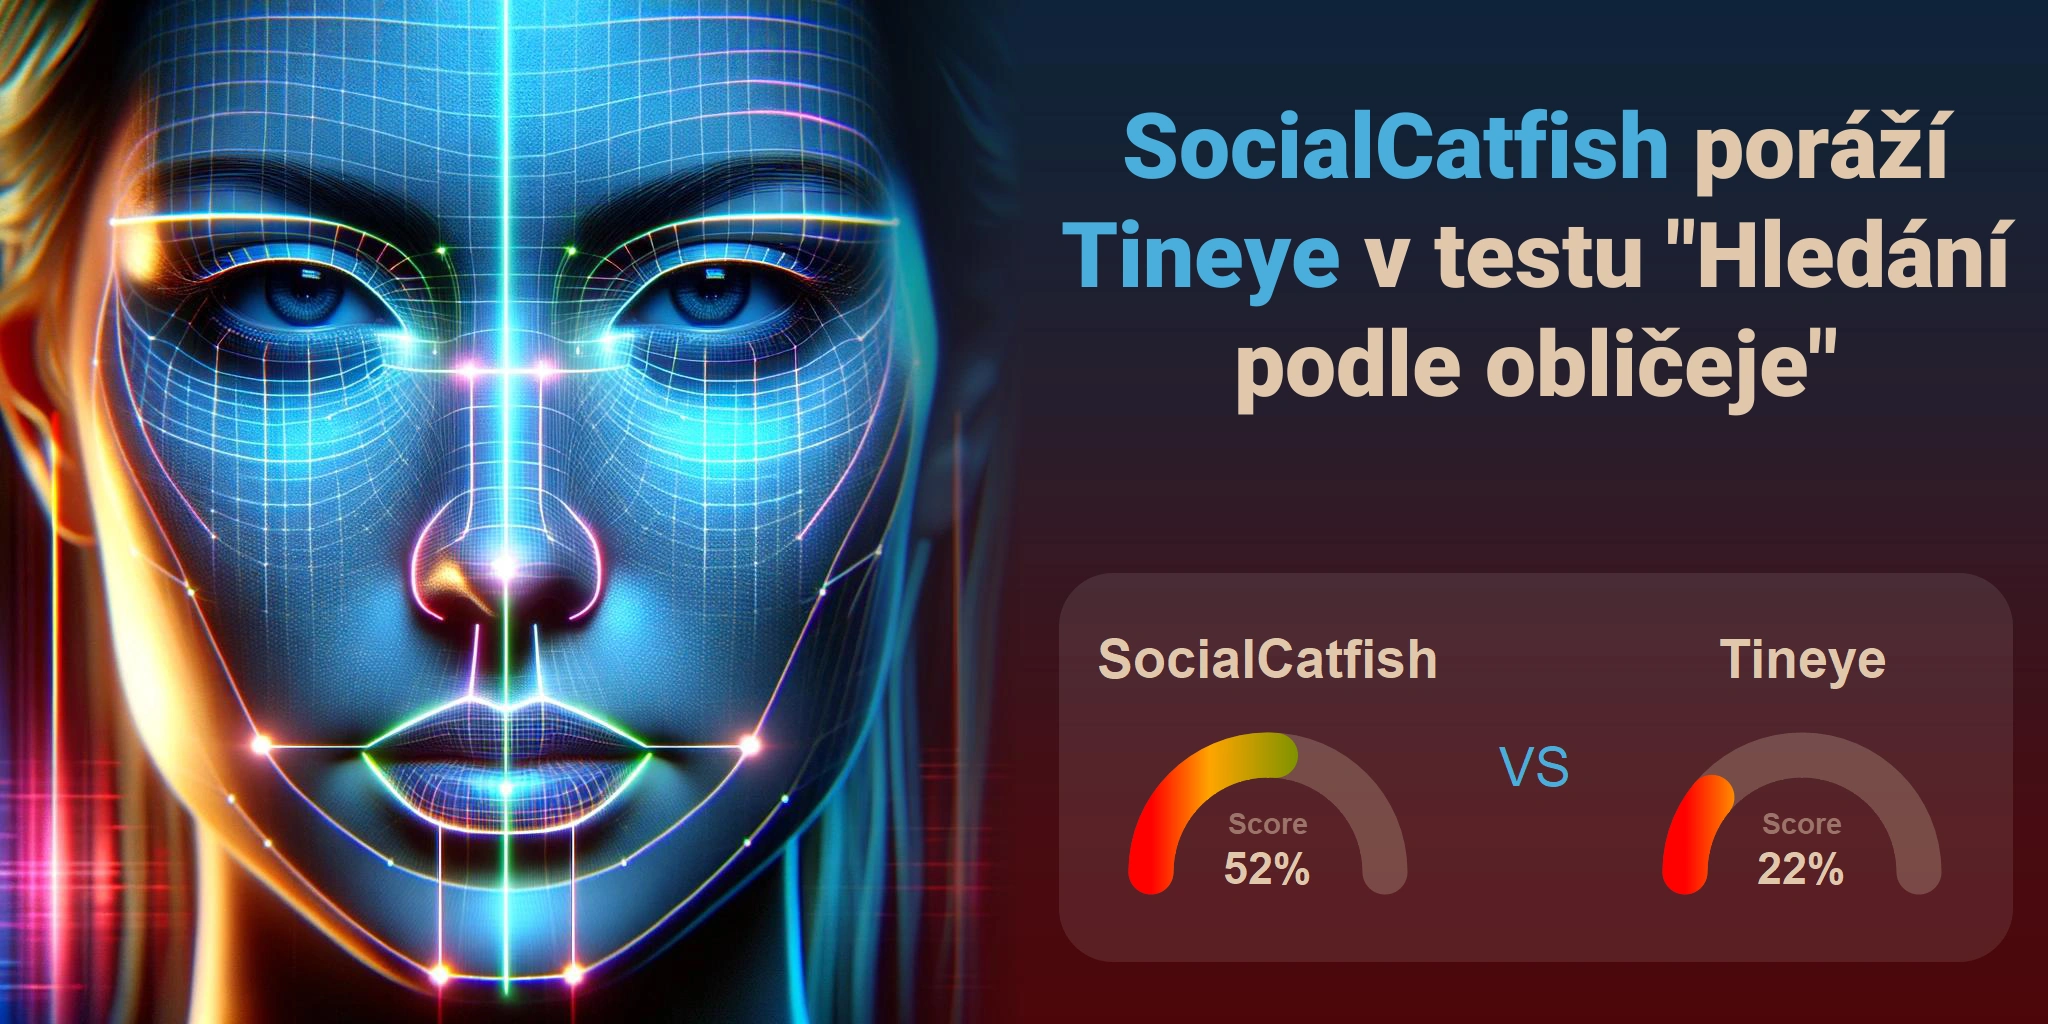 Který je lepší pro vyhledávání obličejů: <br>Tineye nebo SocialCatfish?